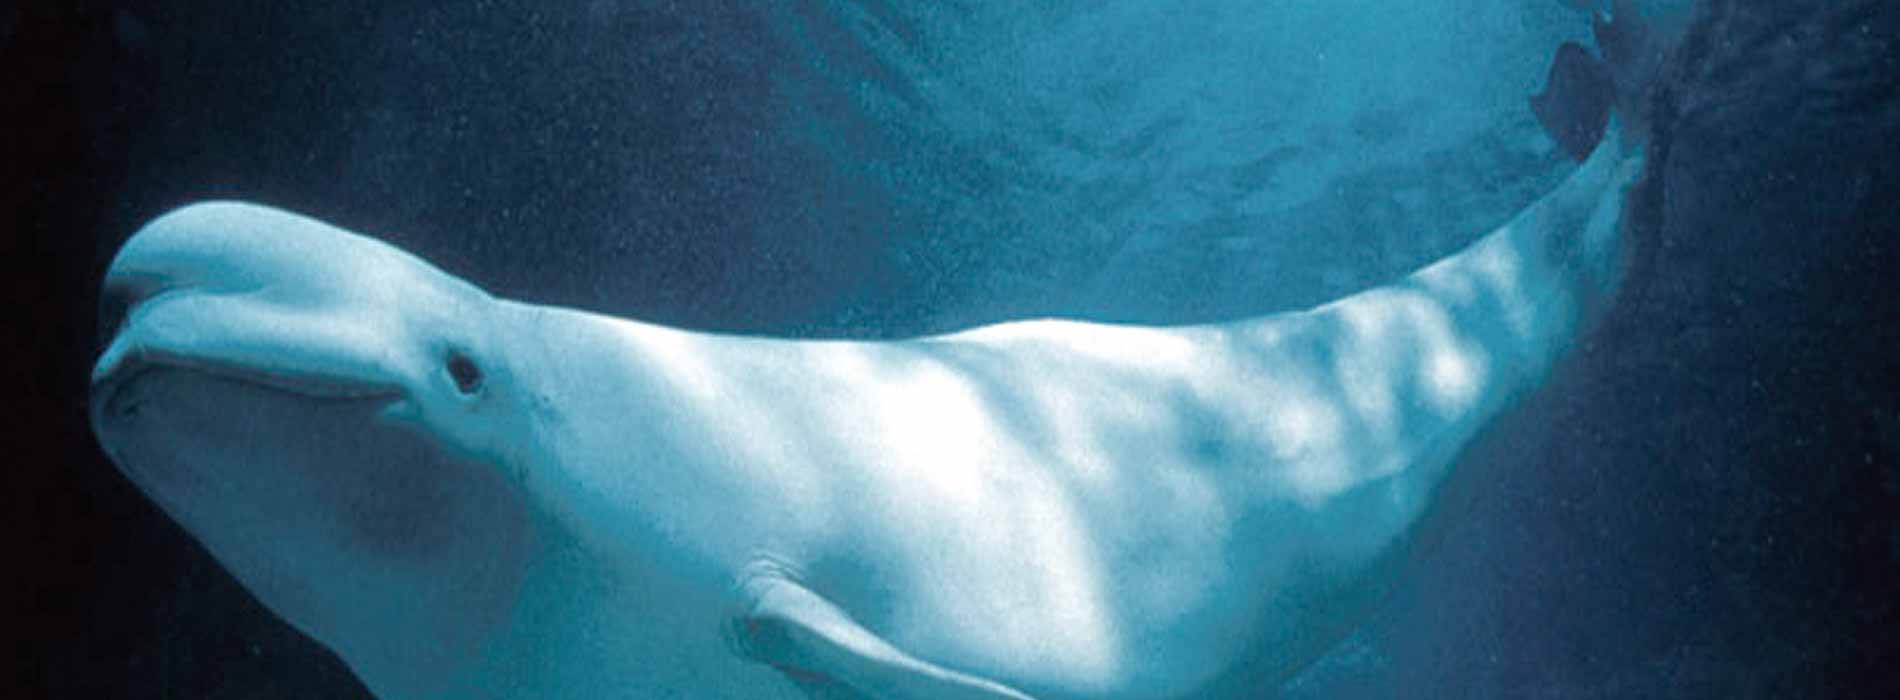 Beluga whale head 